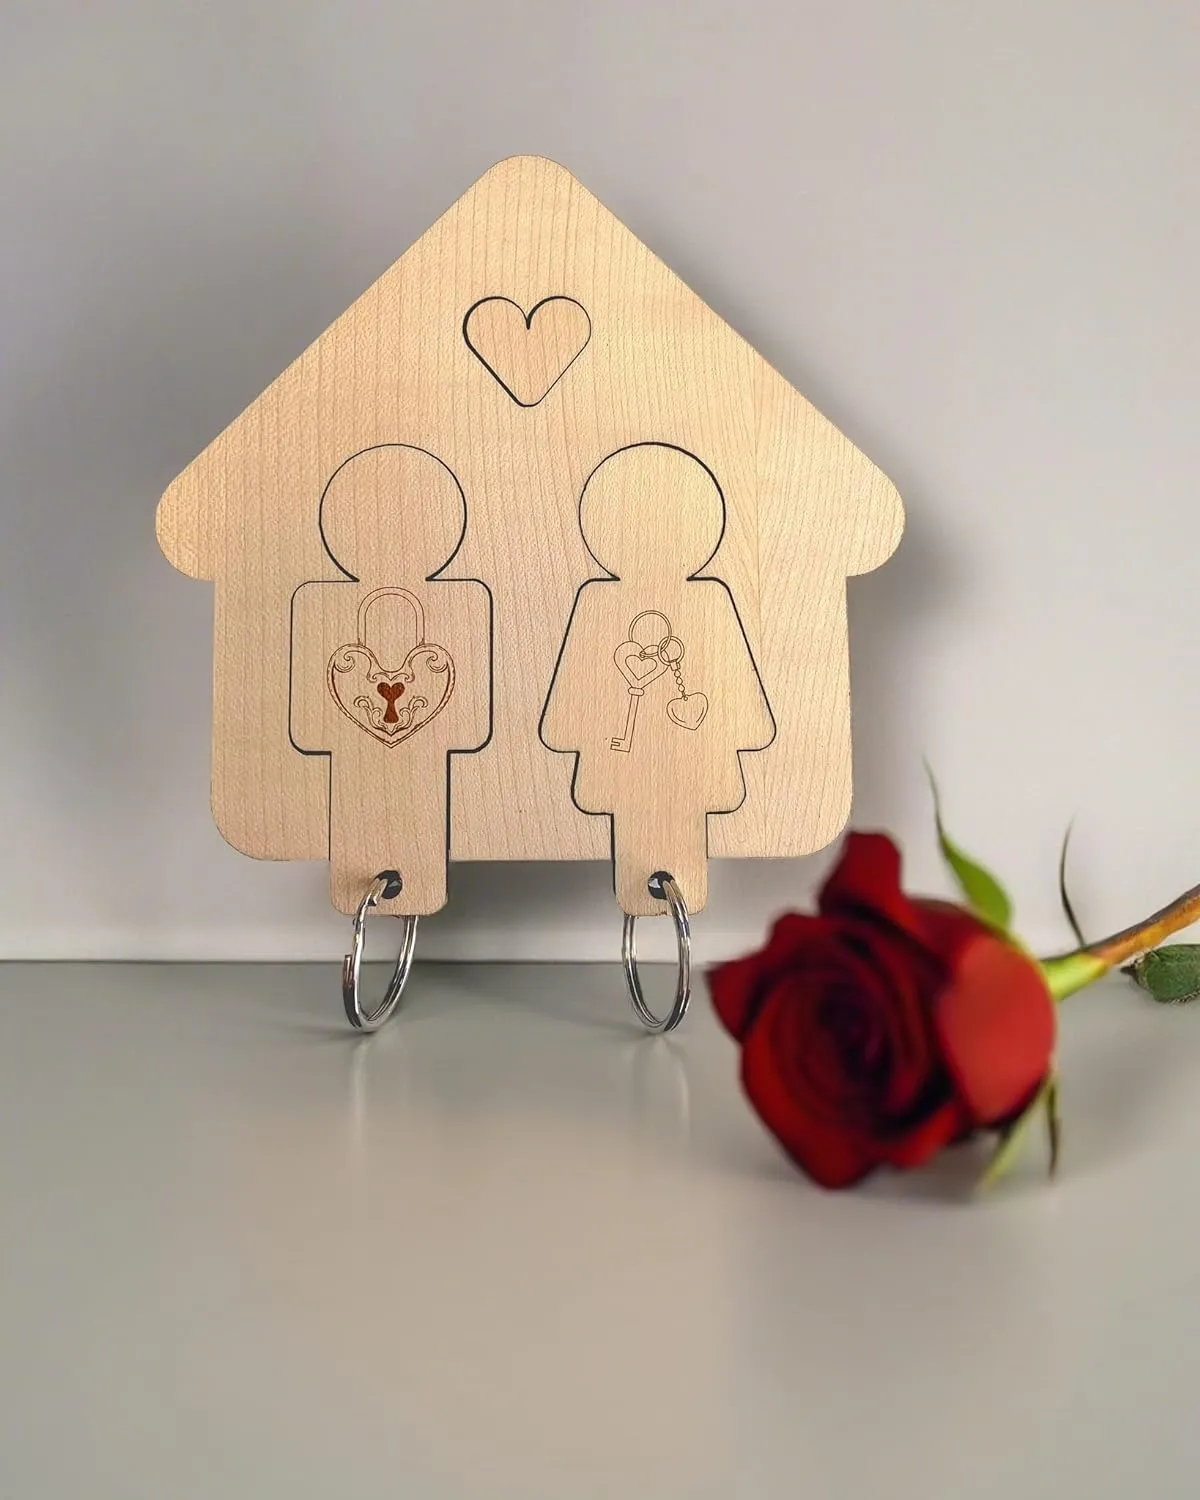 Personalisiertes 'Trautes Heim' Schlüsselbrett aus Buchenholz mit Herz & Figuren